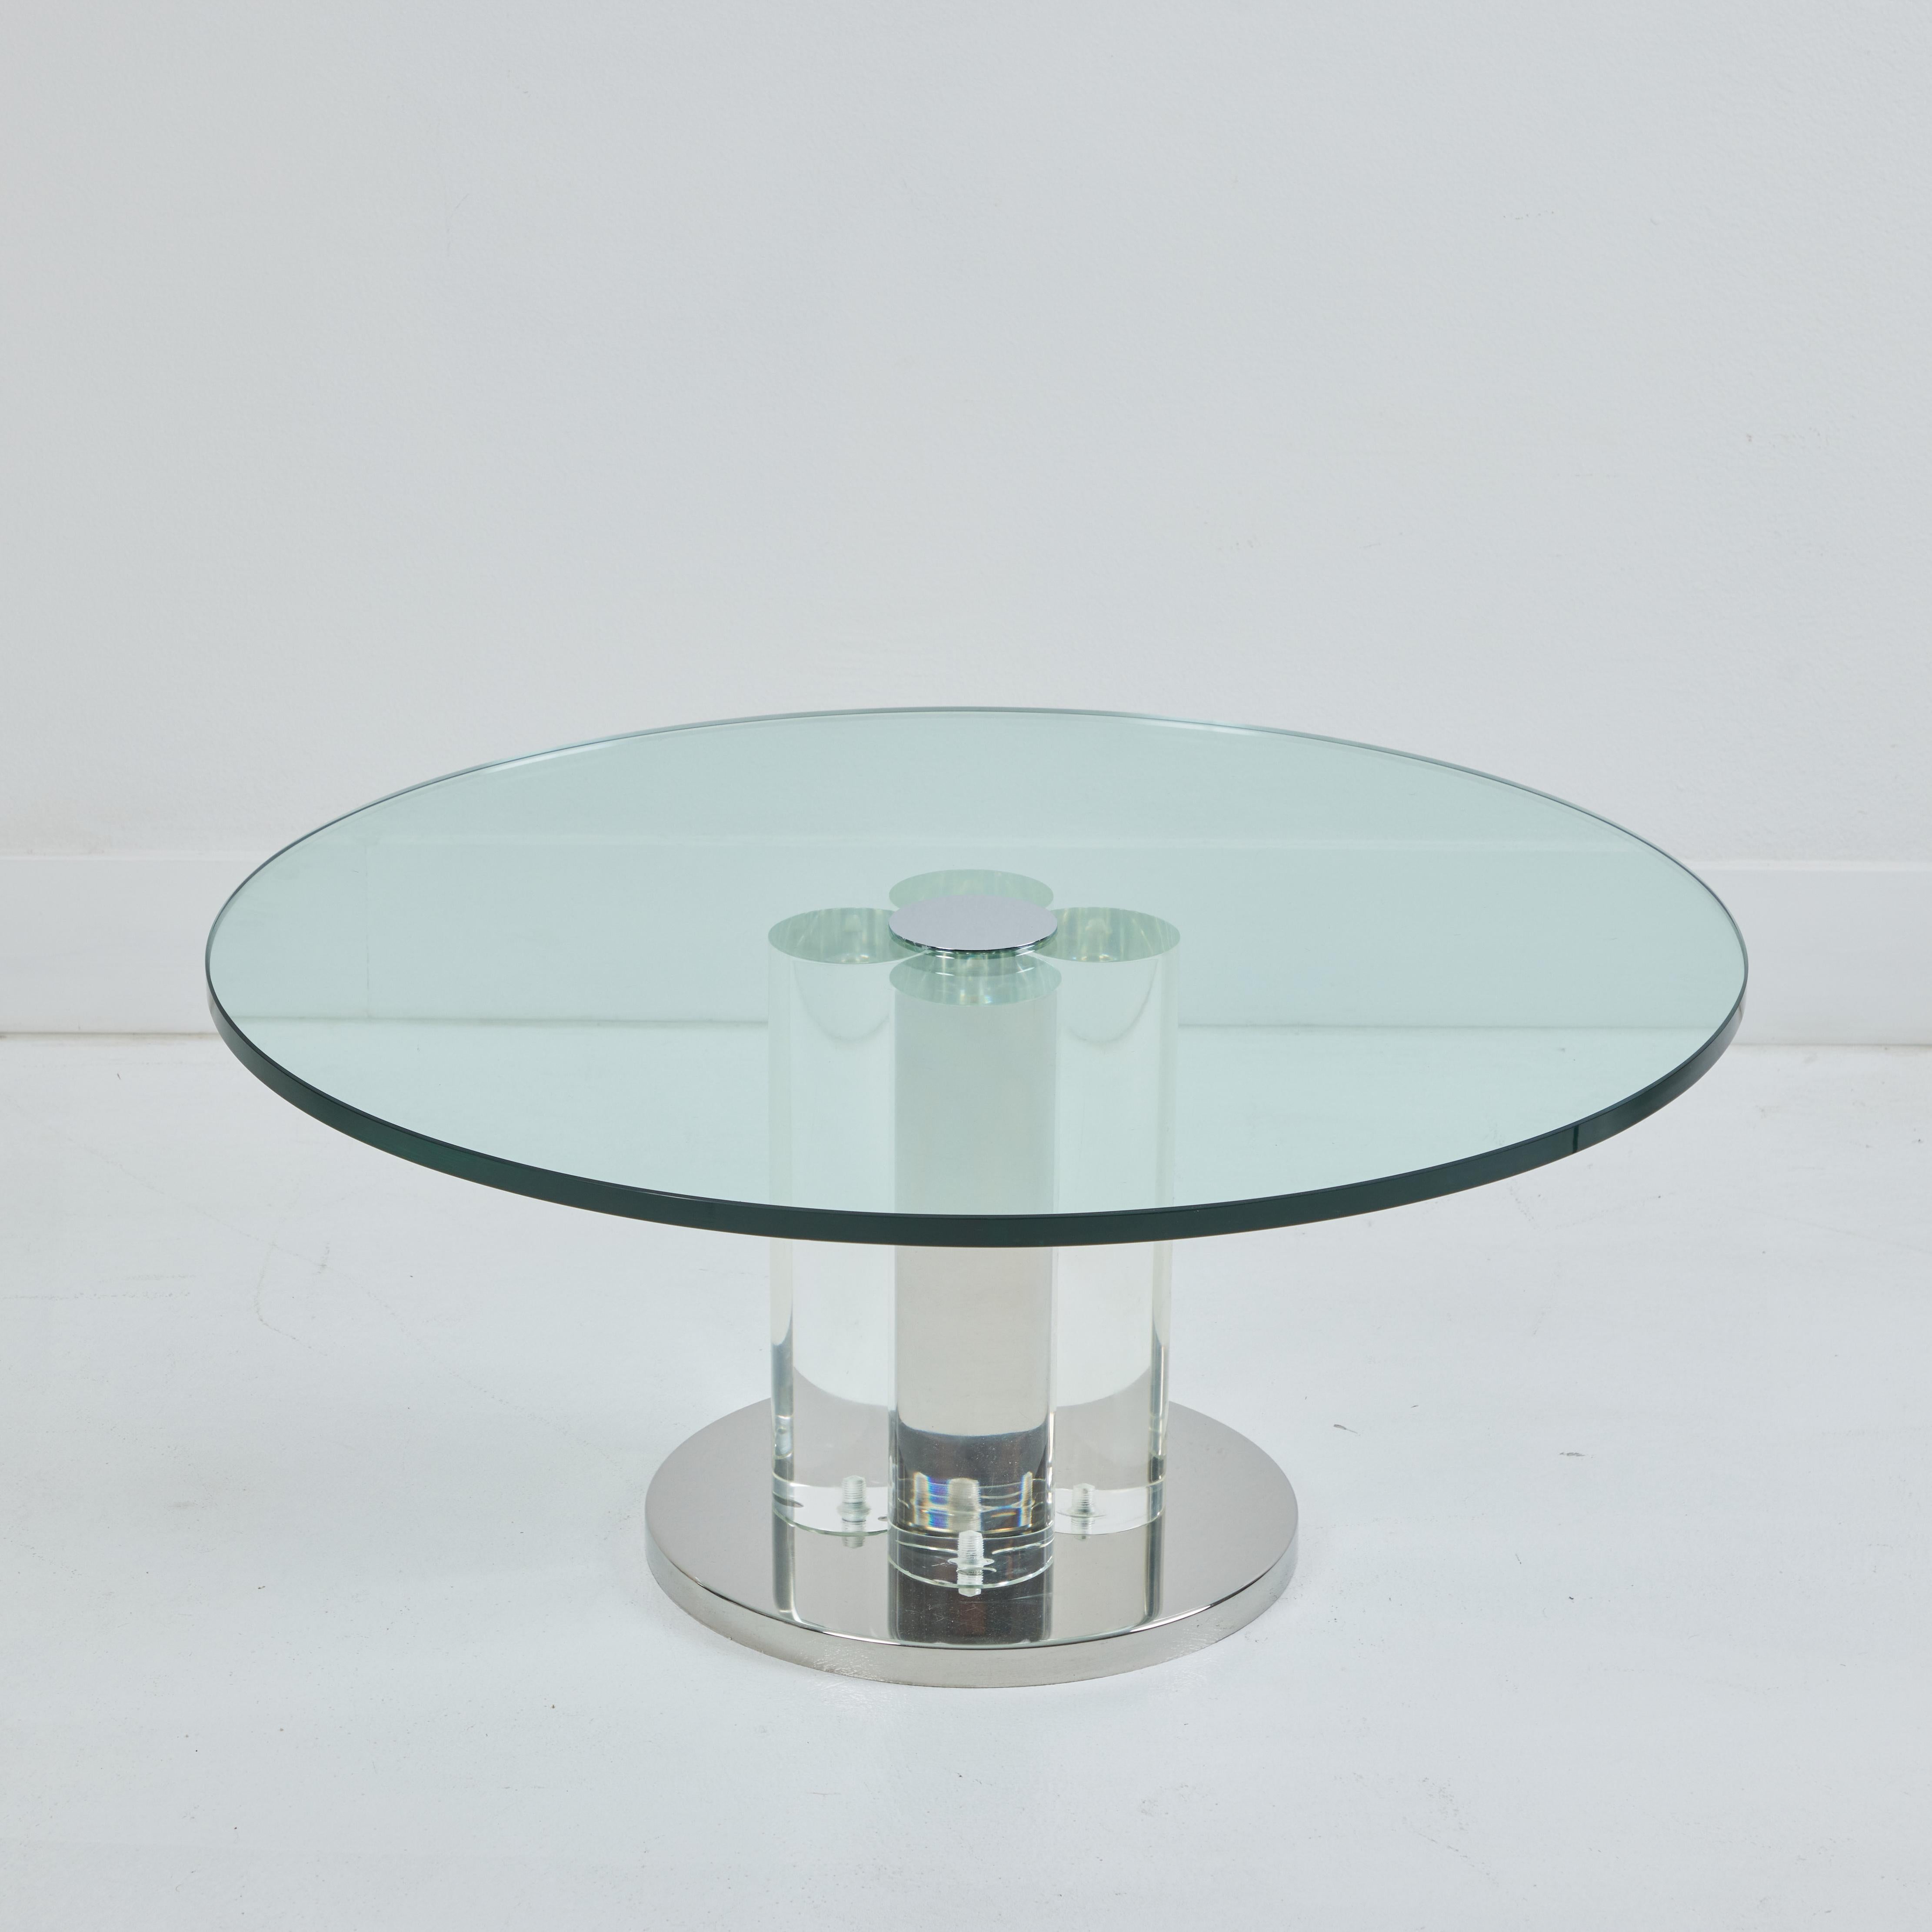 Dans le style de Charles Hollis Jones, voici une magnifique table basse en lucite et à base chromée. Avec un diamètre de 35,5 pouces, il est d'une taille idéale pour un intérieur compact ; il pourrait également flotter magnifiquement dans un espace